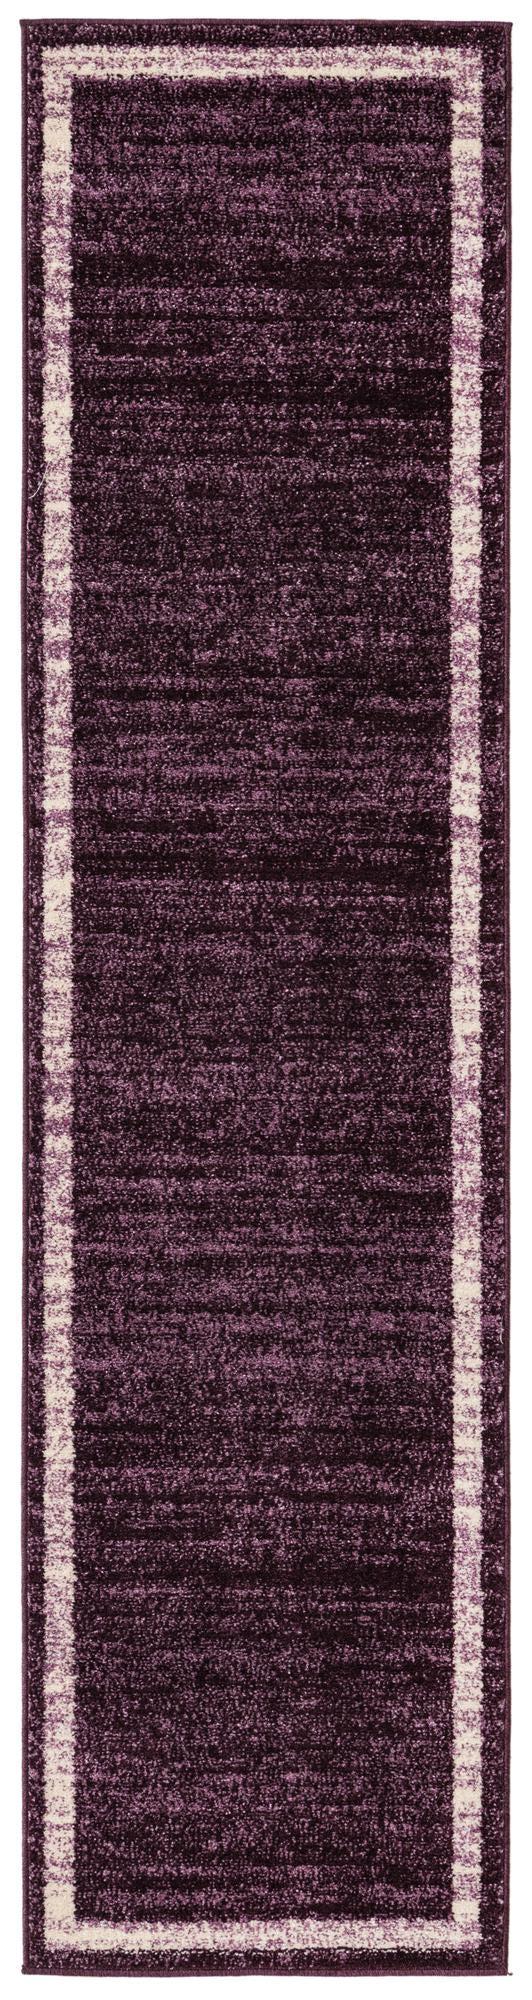 unique loom del mar solid/striped area rug collection